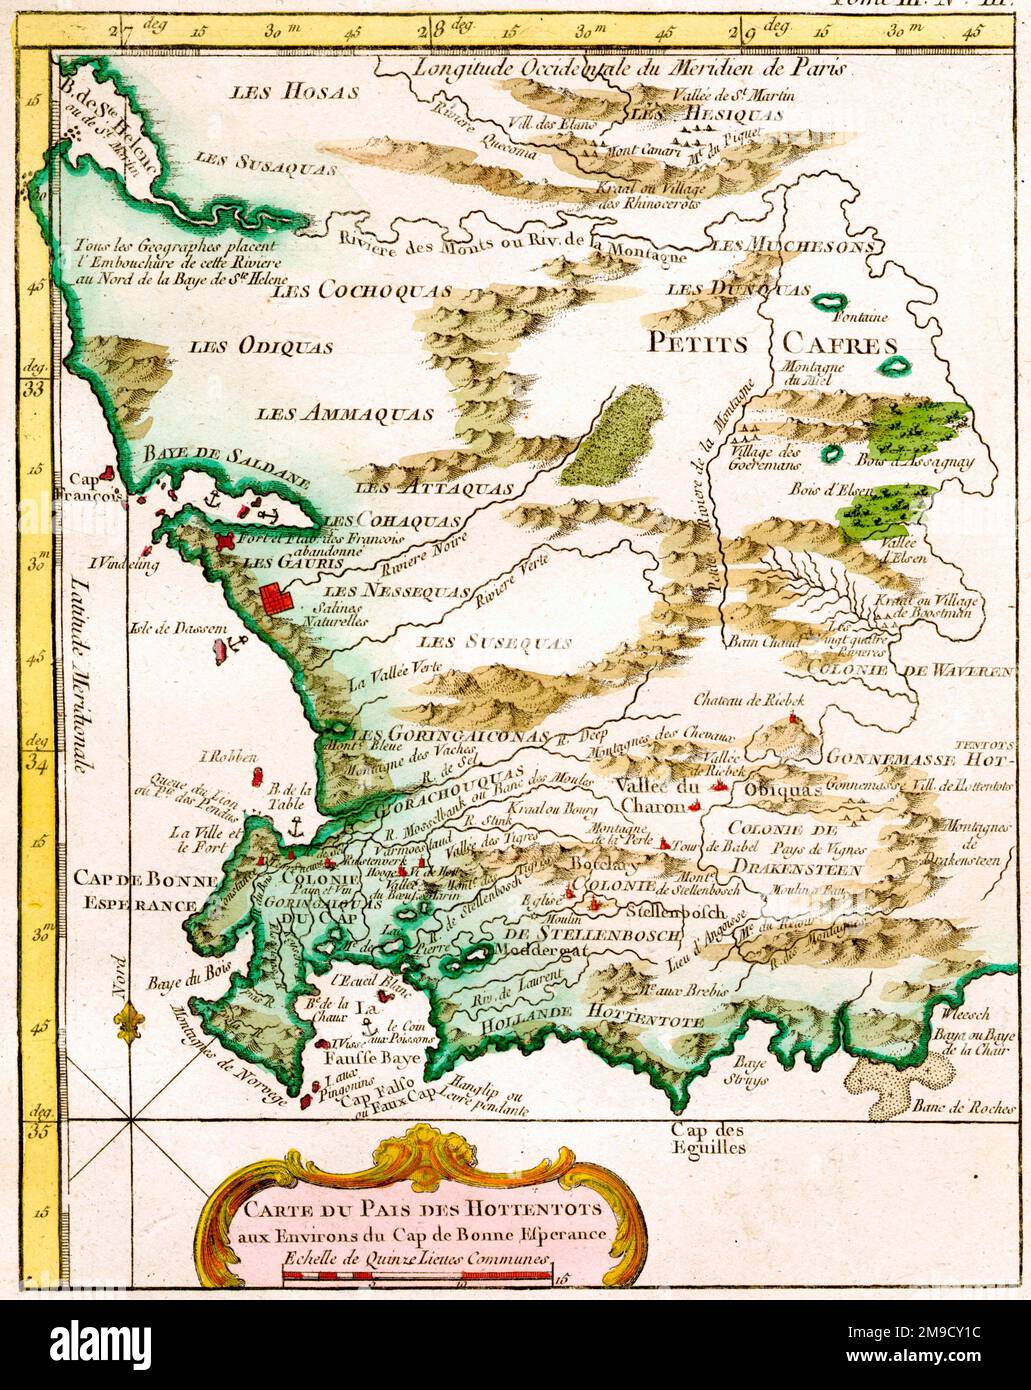 Karte des Landes der Hottentots aus dem 18. Jahrhundert, Kap der Guten Hoffnung, Südafrika Stockfoto